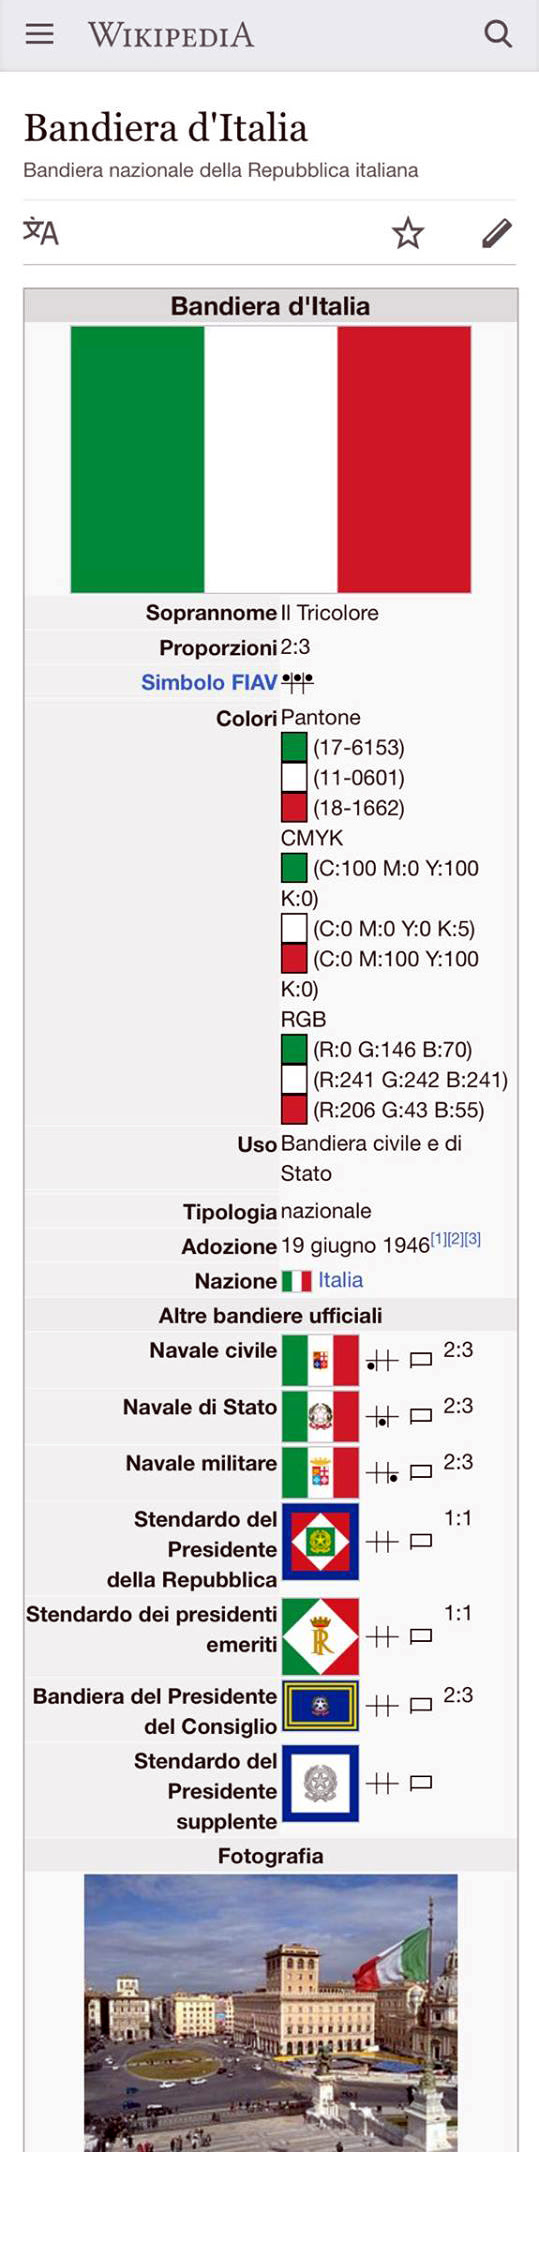 Condizioni dei contadini italiani i contadini italiani vivevano in maggioranza in condizioni pessime 55. Il Tricolore